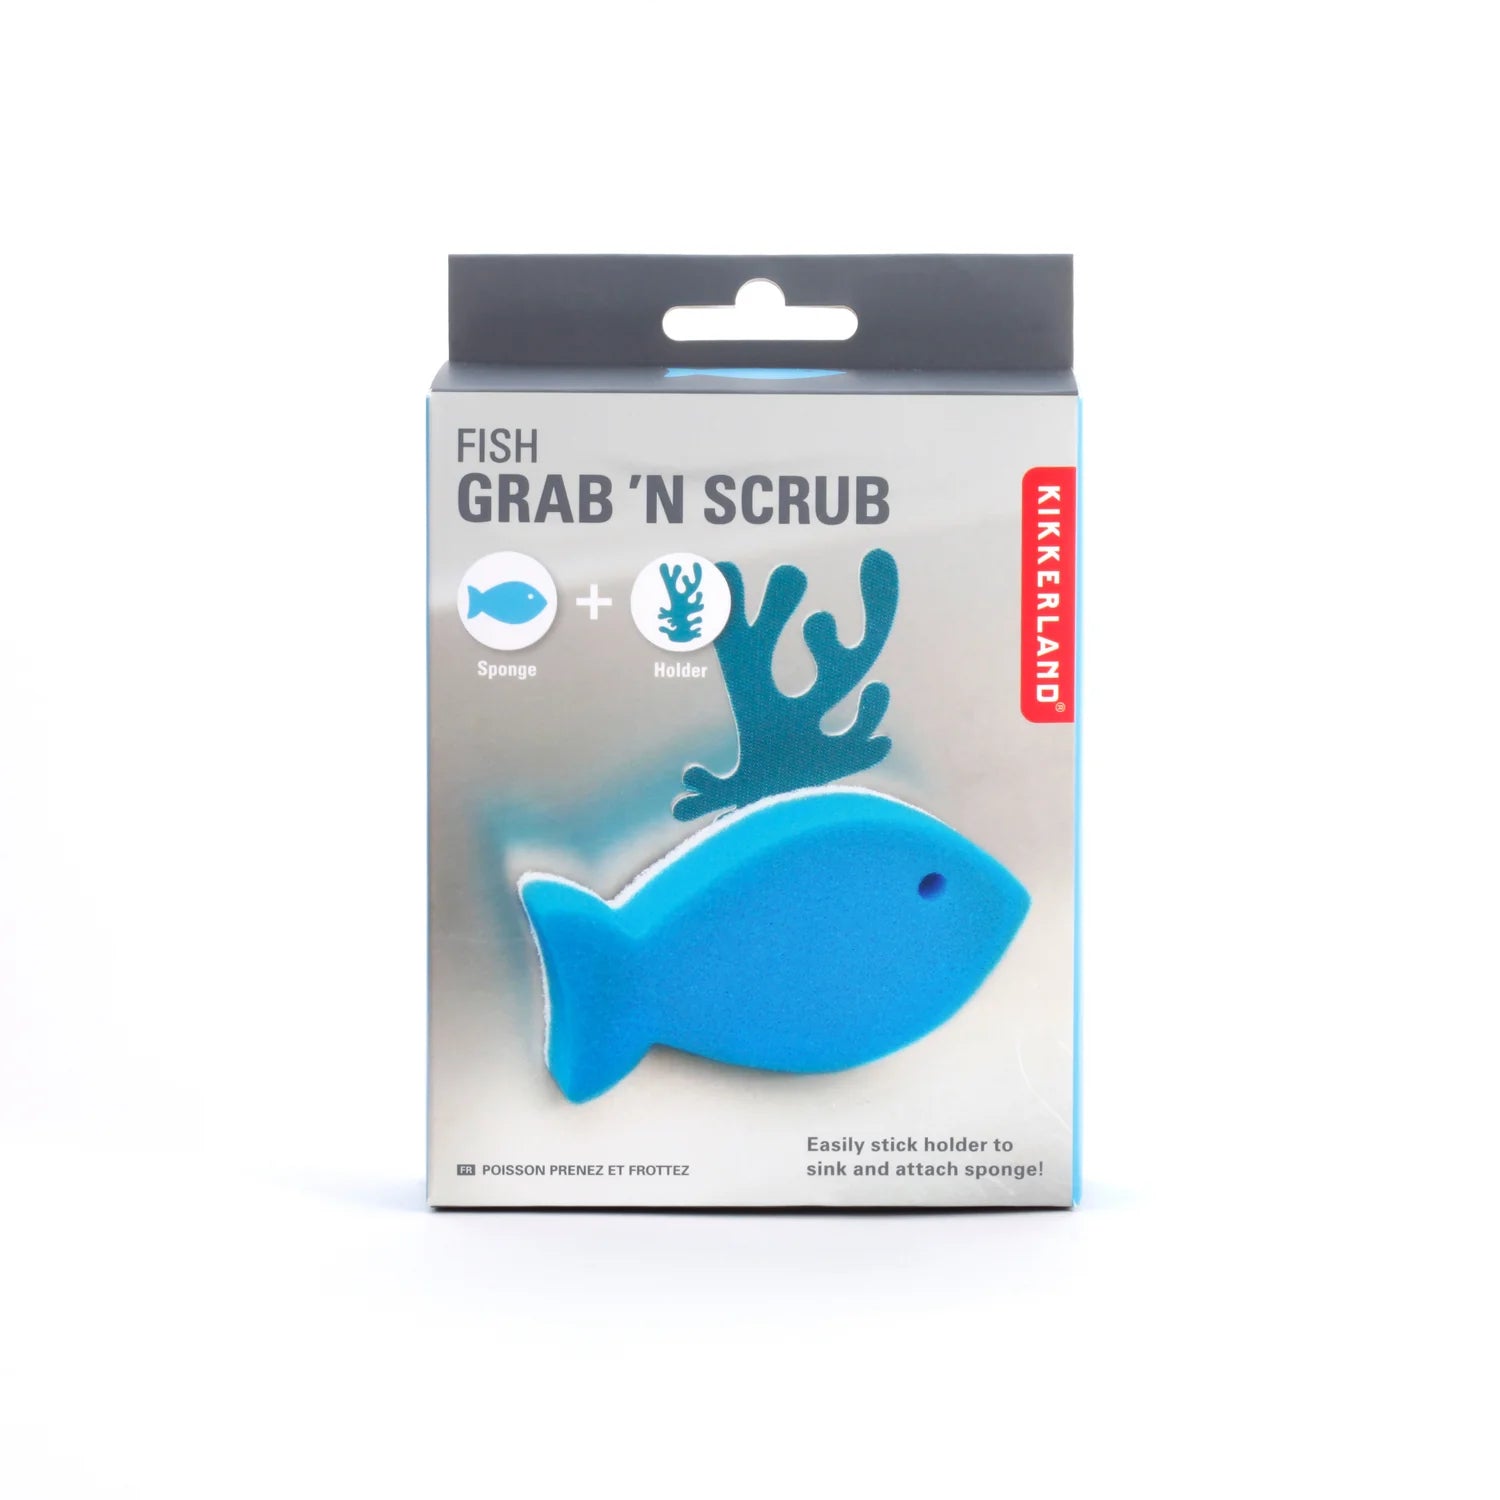 Fish Grab 'n Scrub Sponge